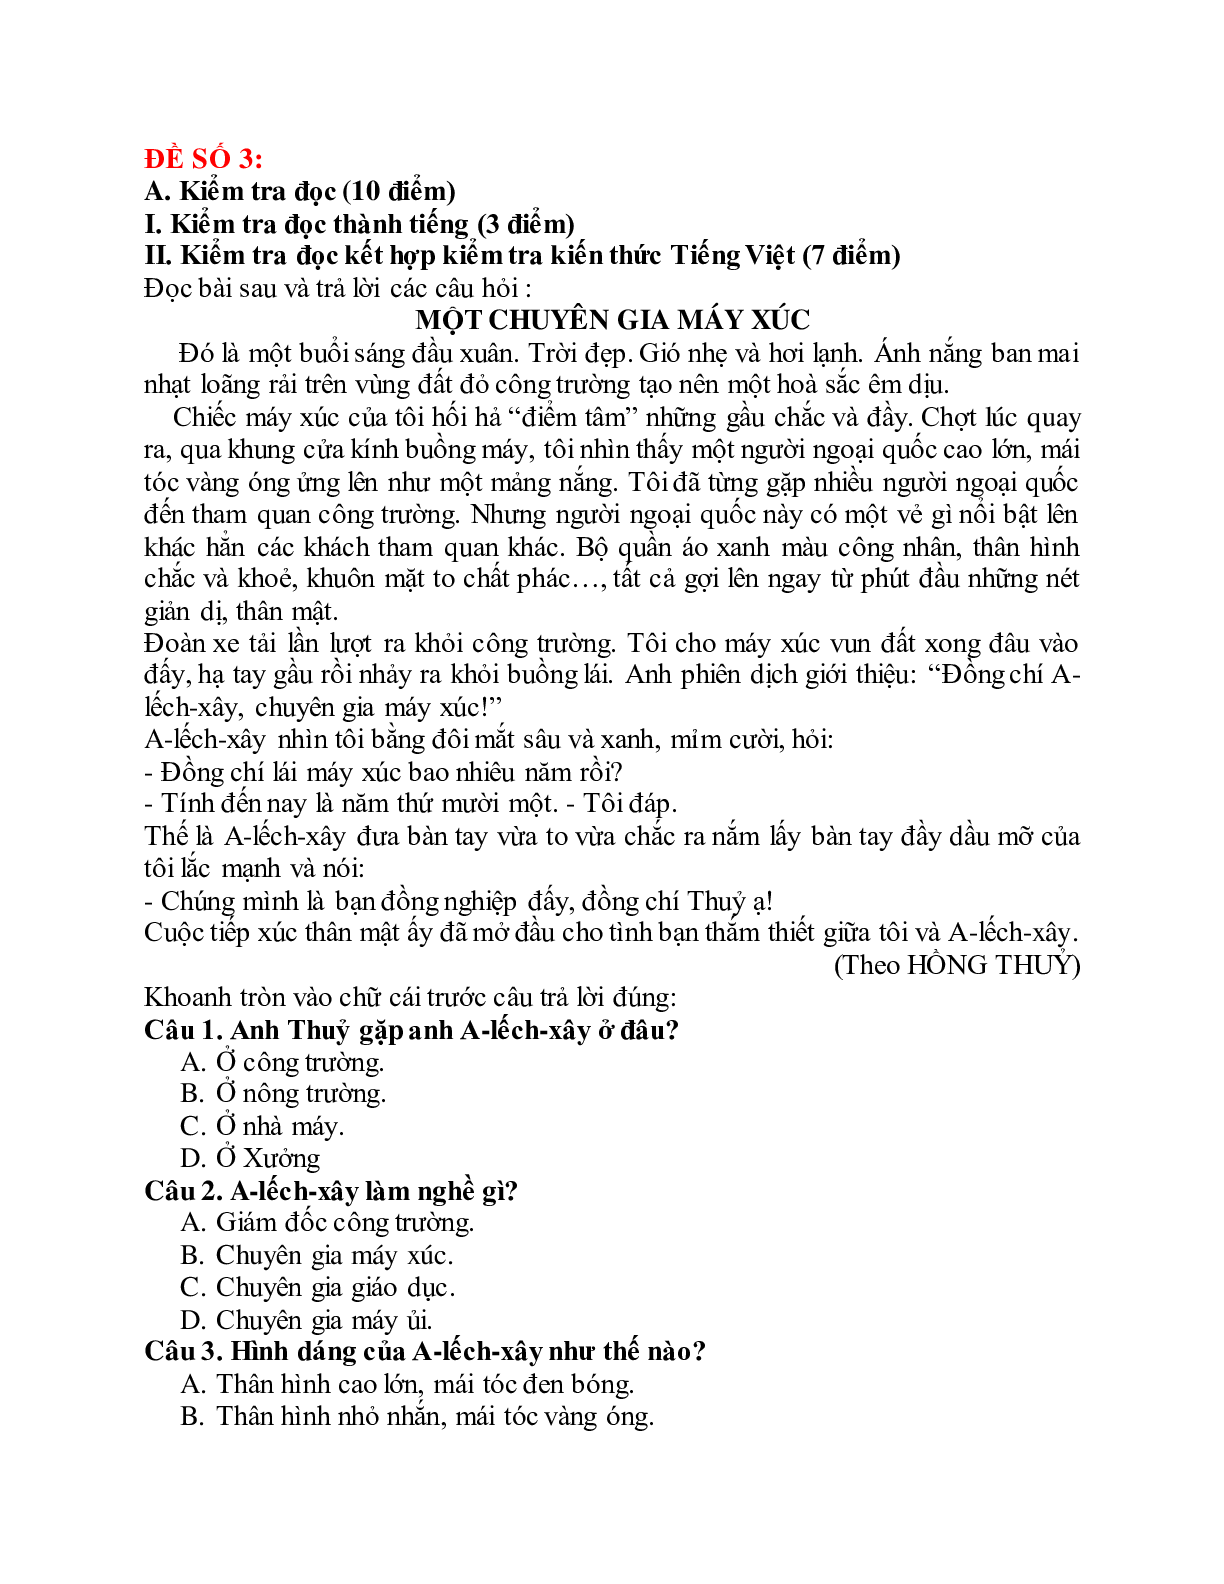 Đề thi Giữa học kì 1 Tiếng Việt lớp 5 năm 2021 - 2022 (10 đề) (trang 7)